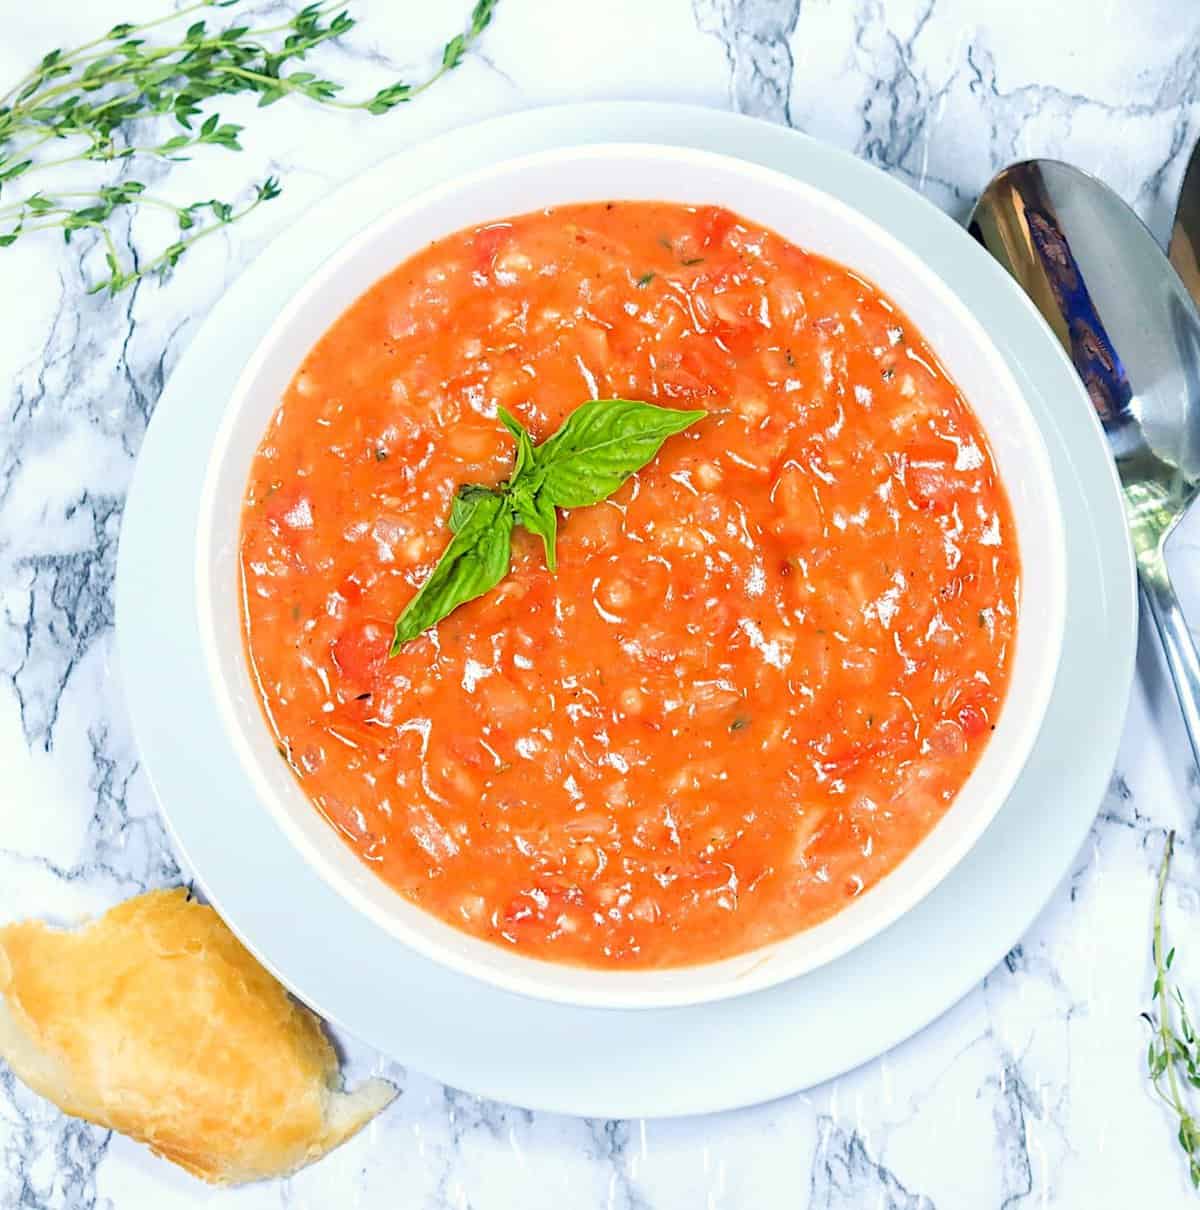 A luscious homemade tomato gravy ready to enjoy